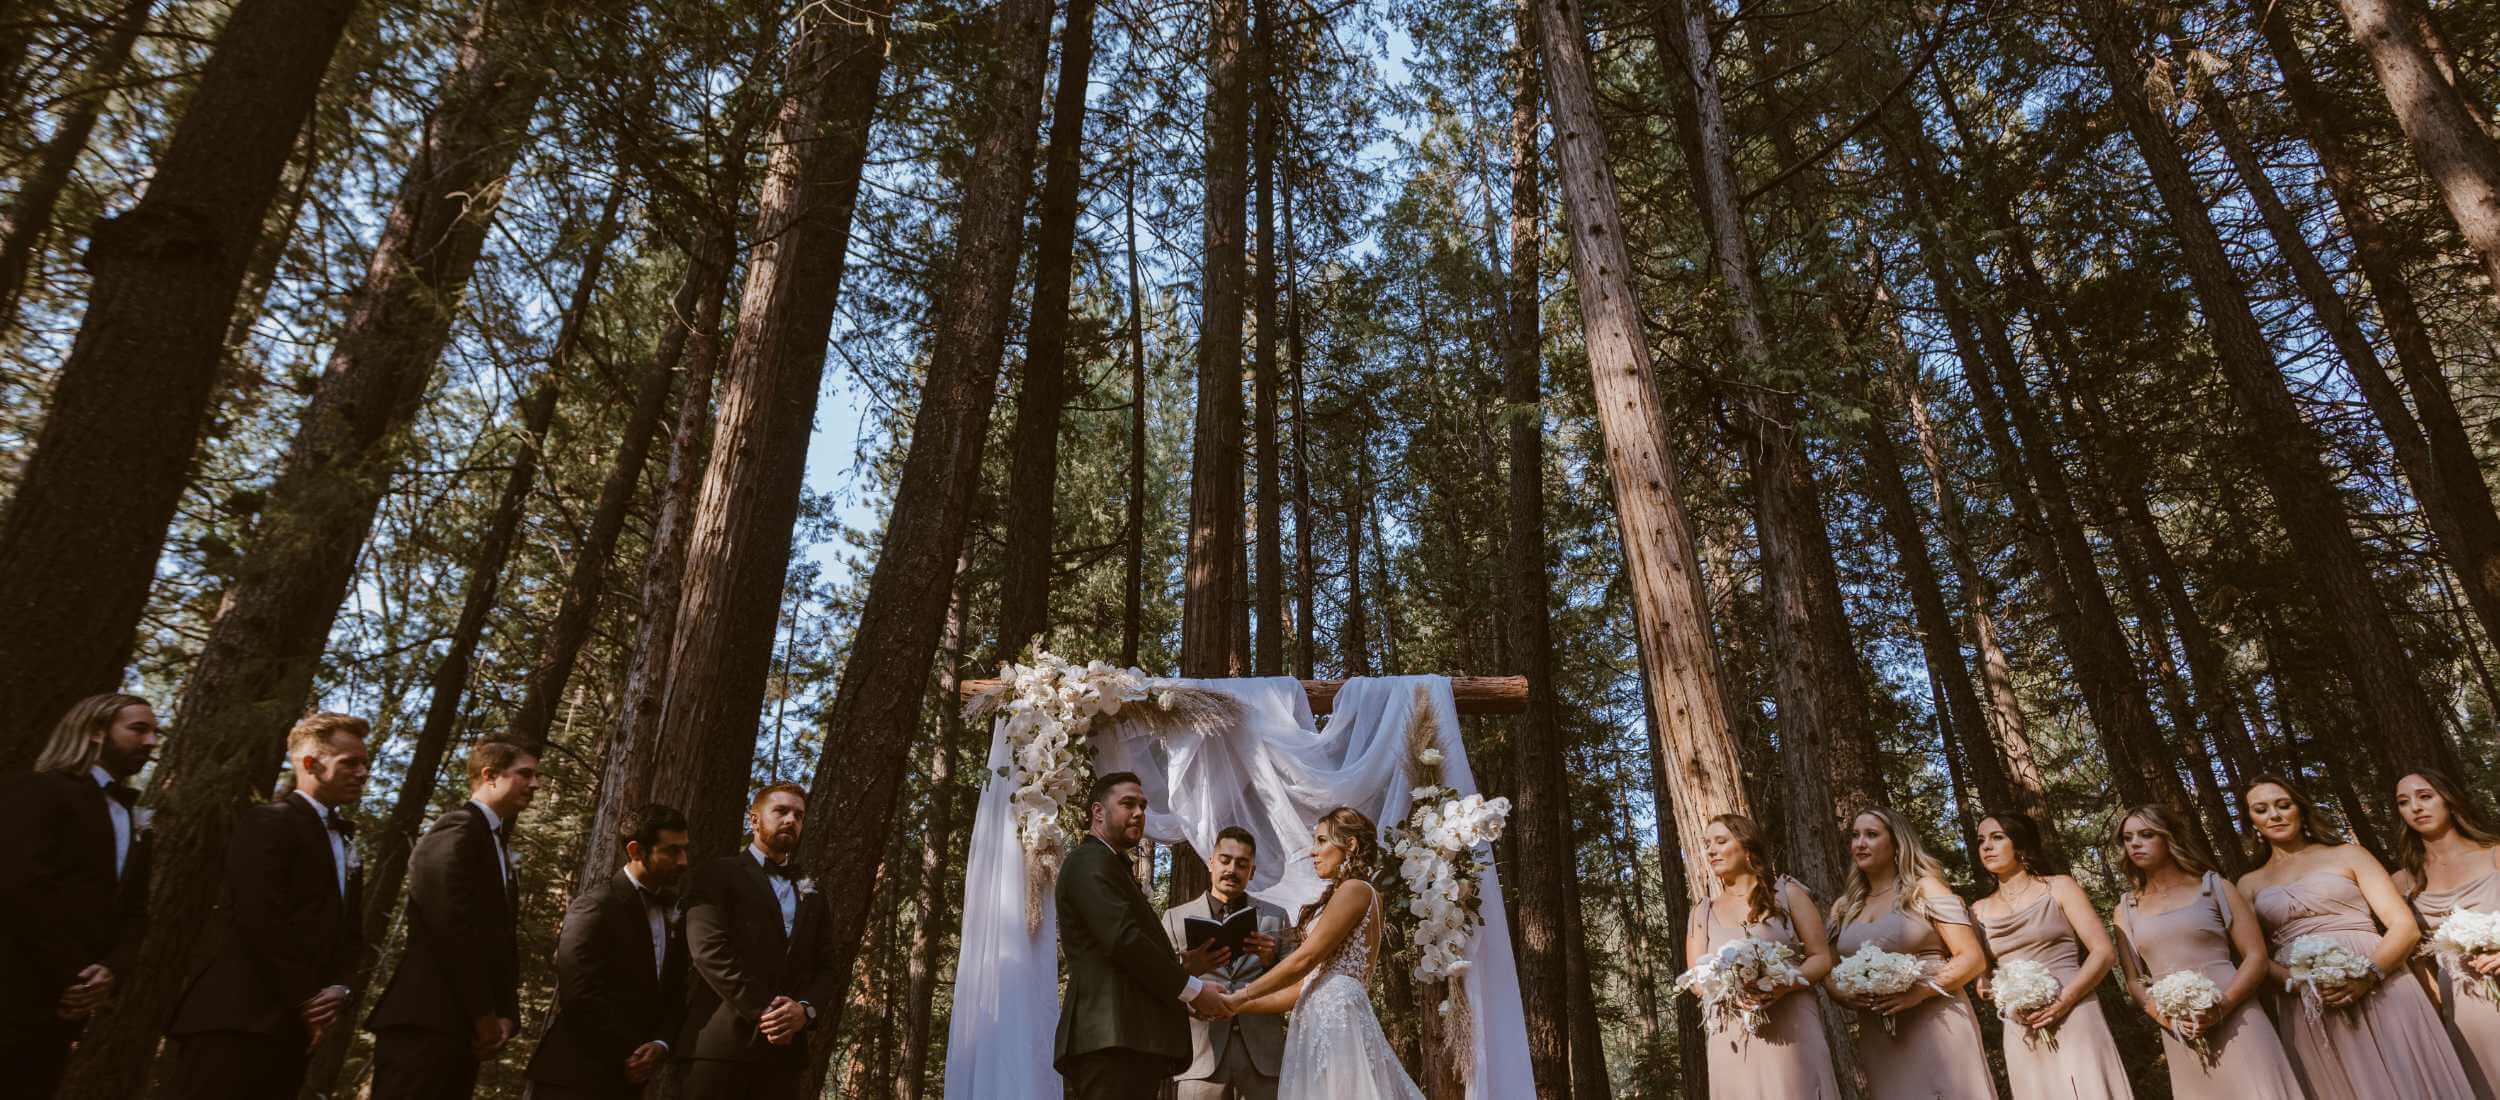 An outdoor wedding at a Northern California wedding venue